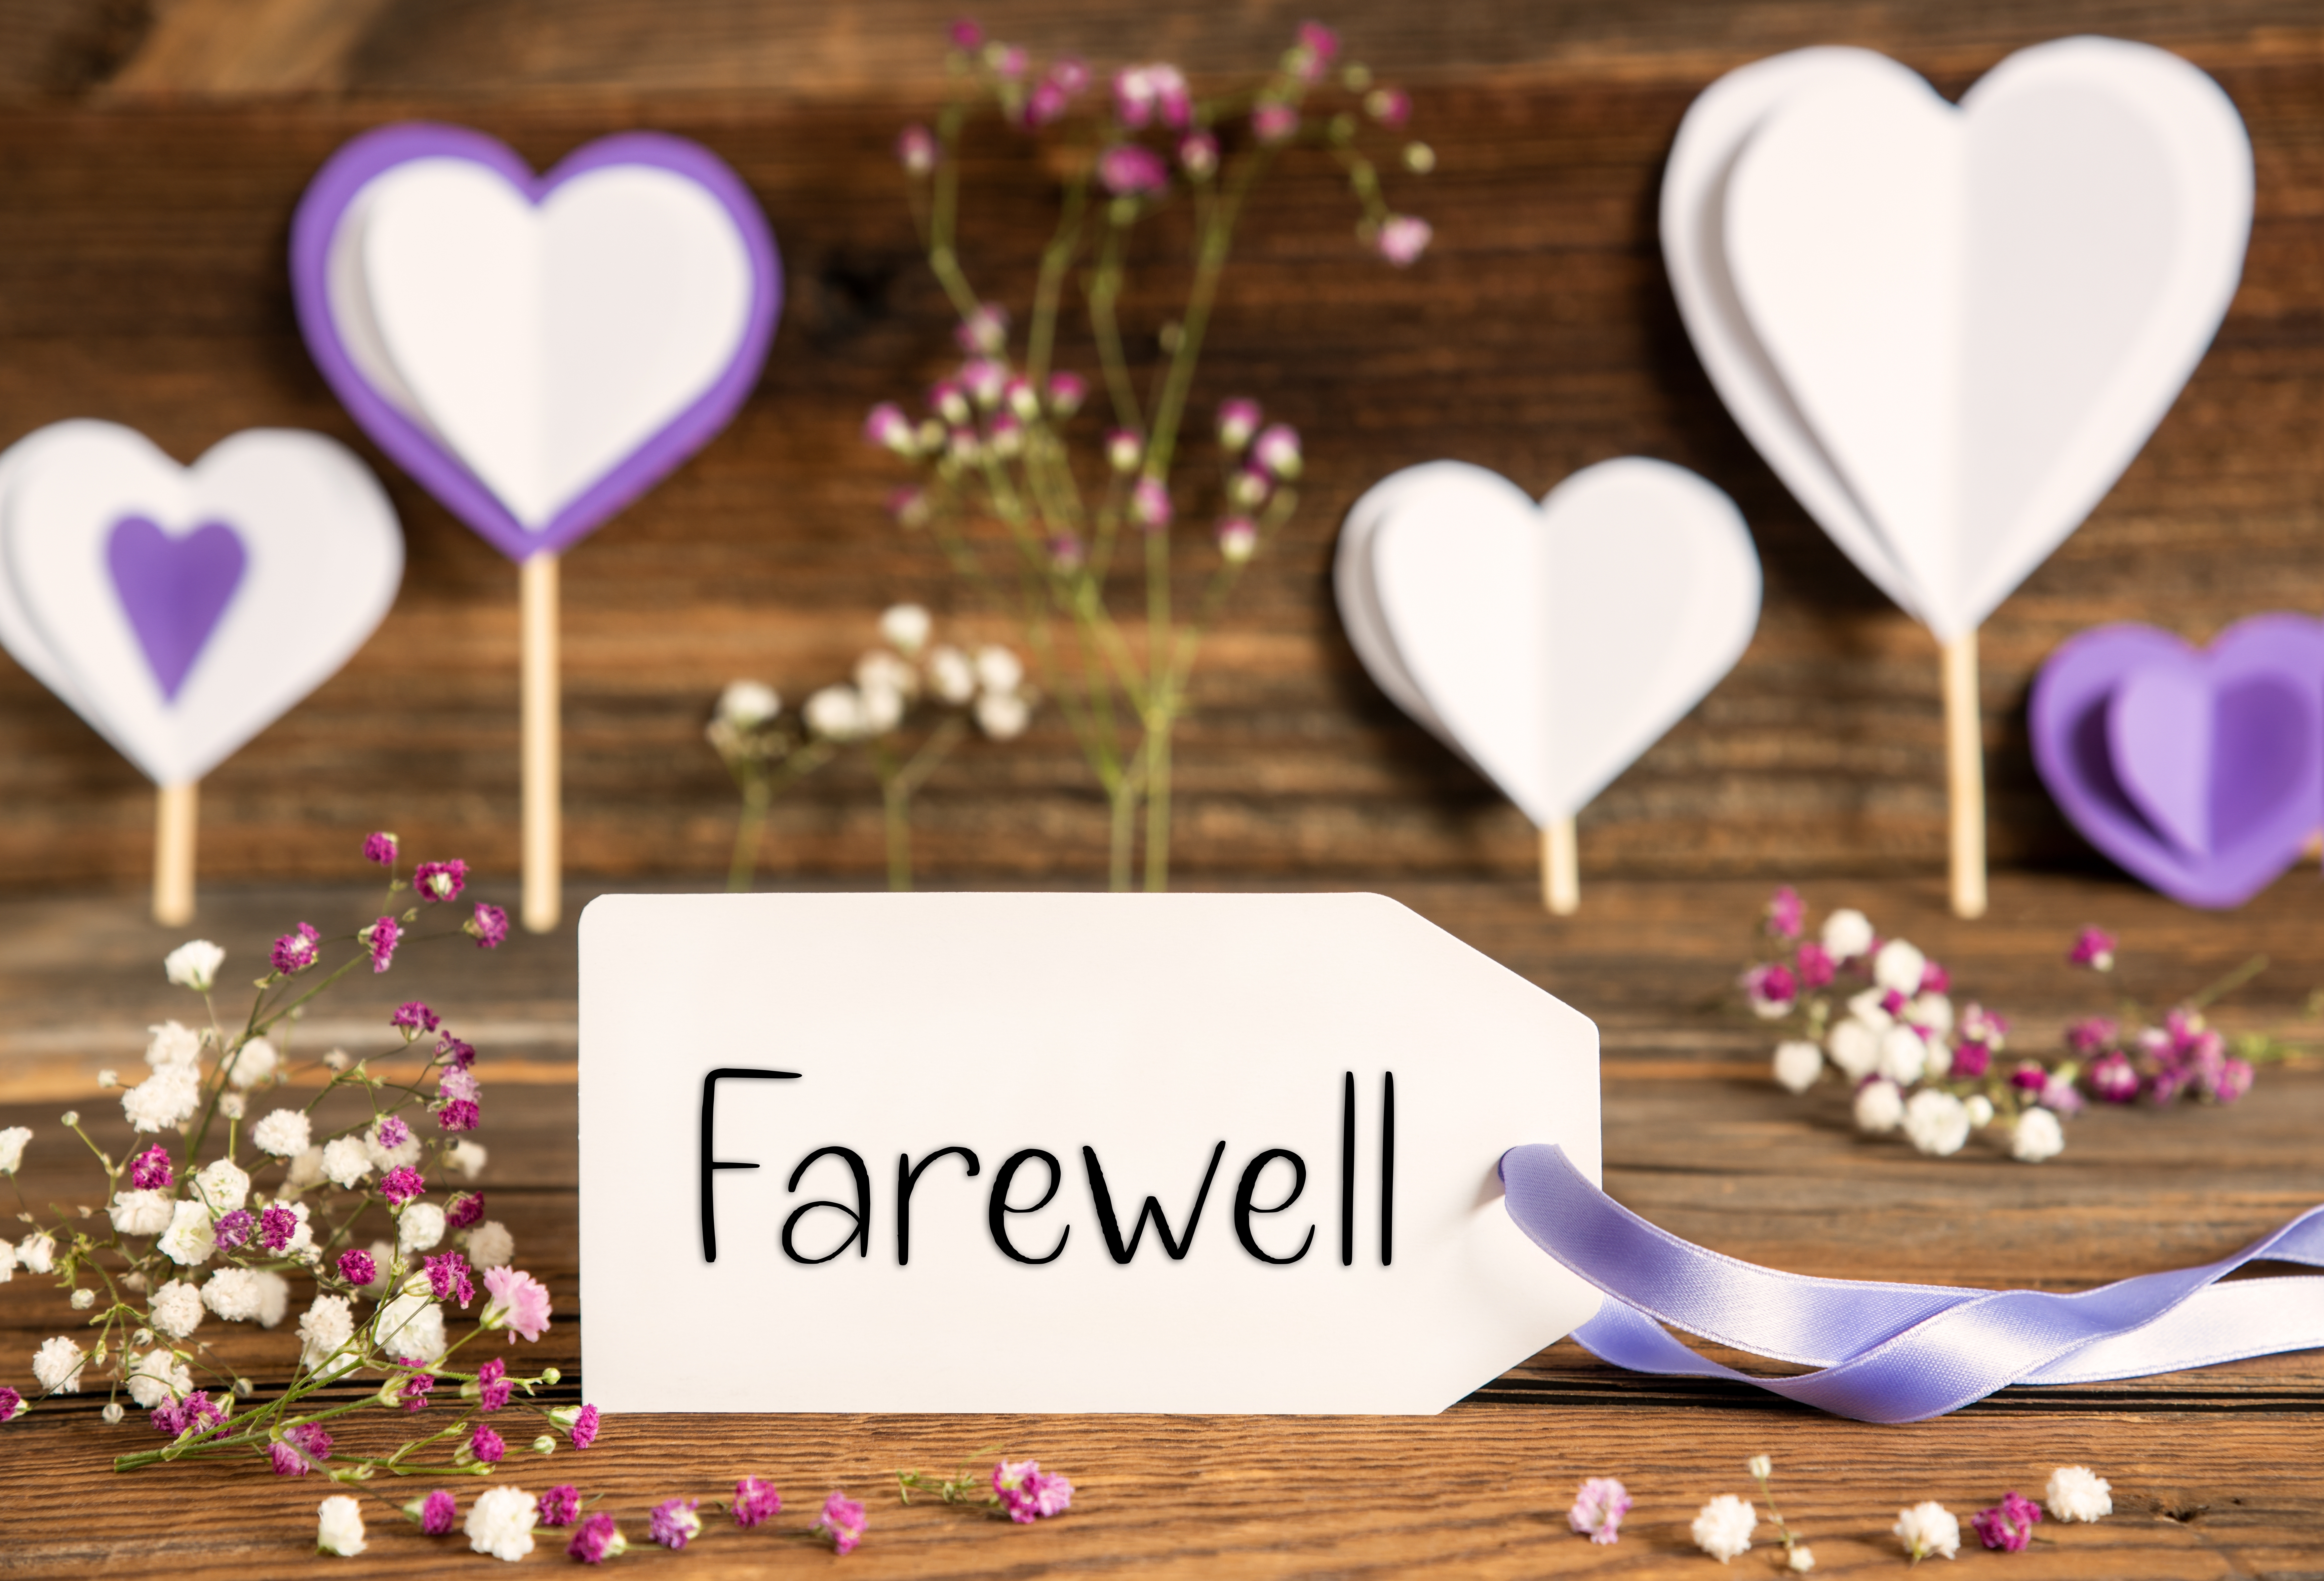 Une carte d'adieu entourée de décorations violettes | Source : Shutterstock